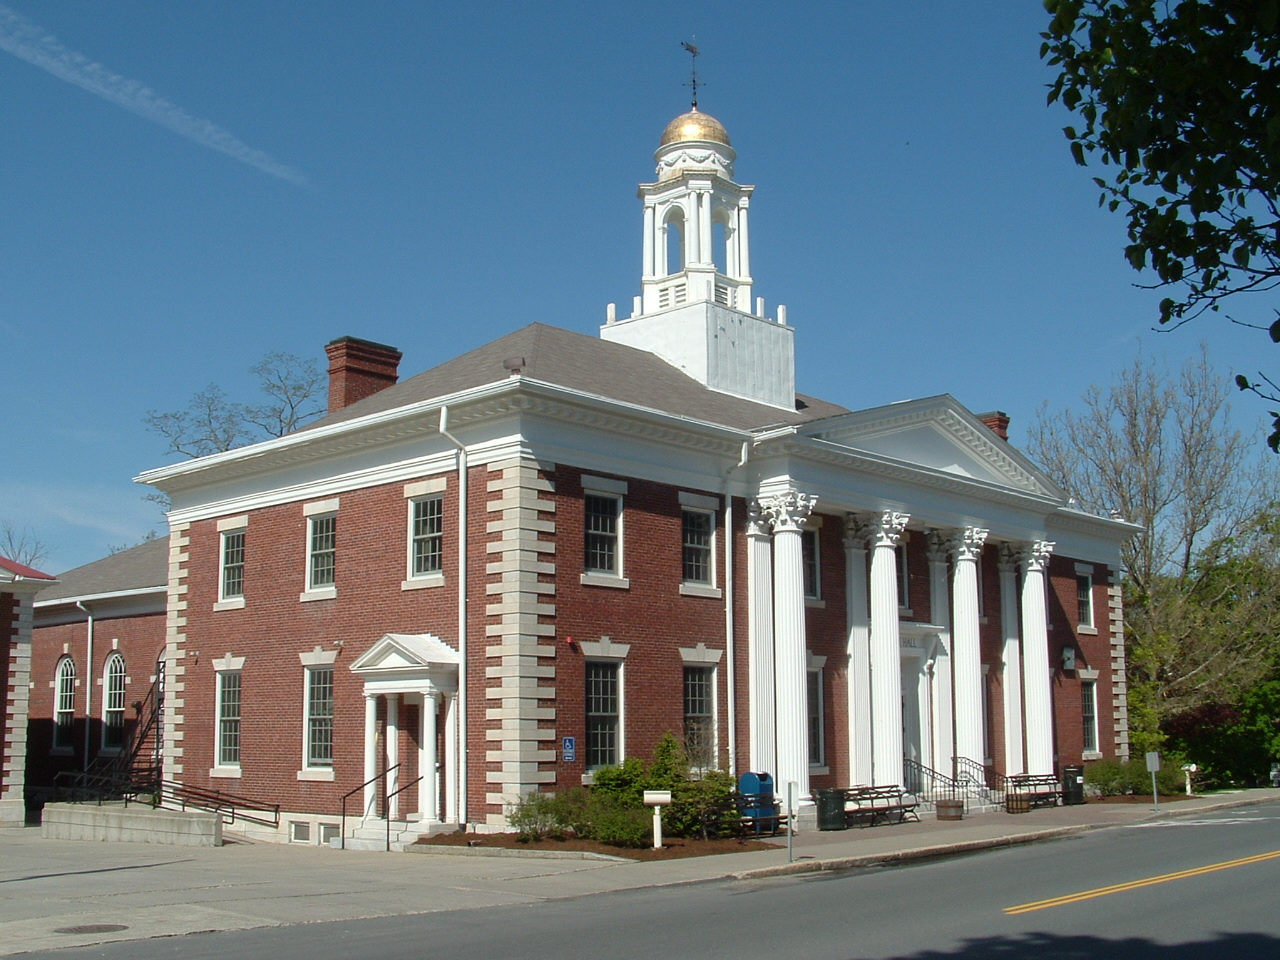 Lenox Town Hall